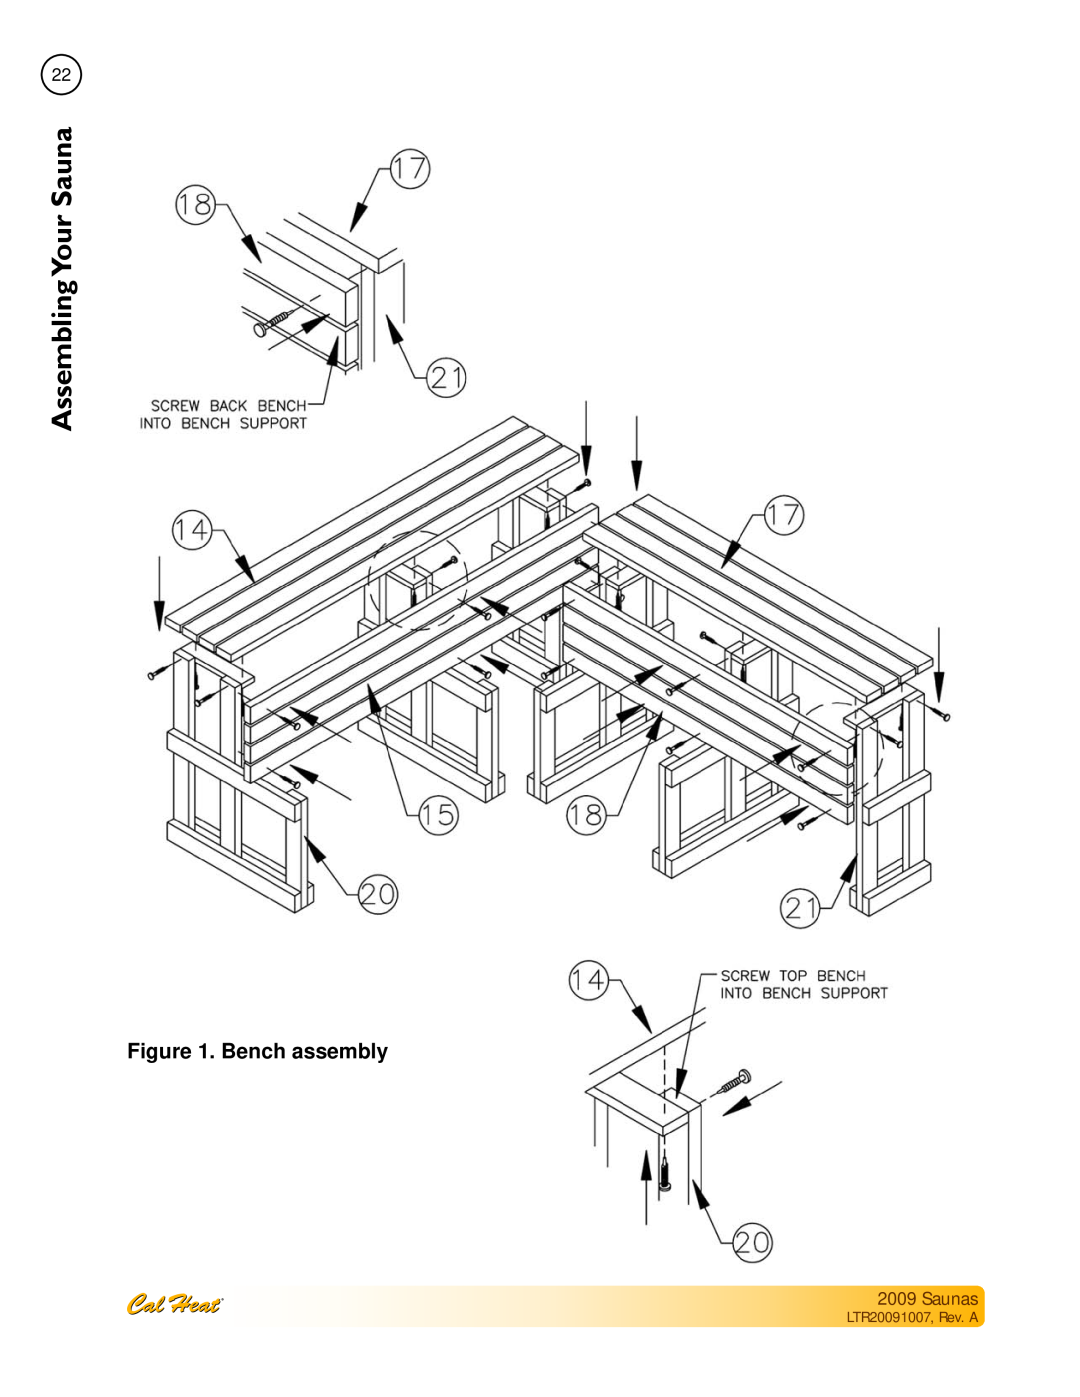 Cal Spas Saunas manual SaunaYour Assembling, Bench assembly, LTR20091007, Rev. A 